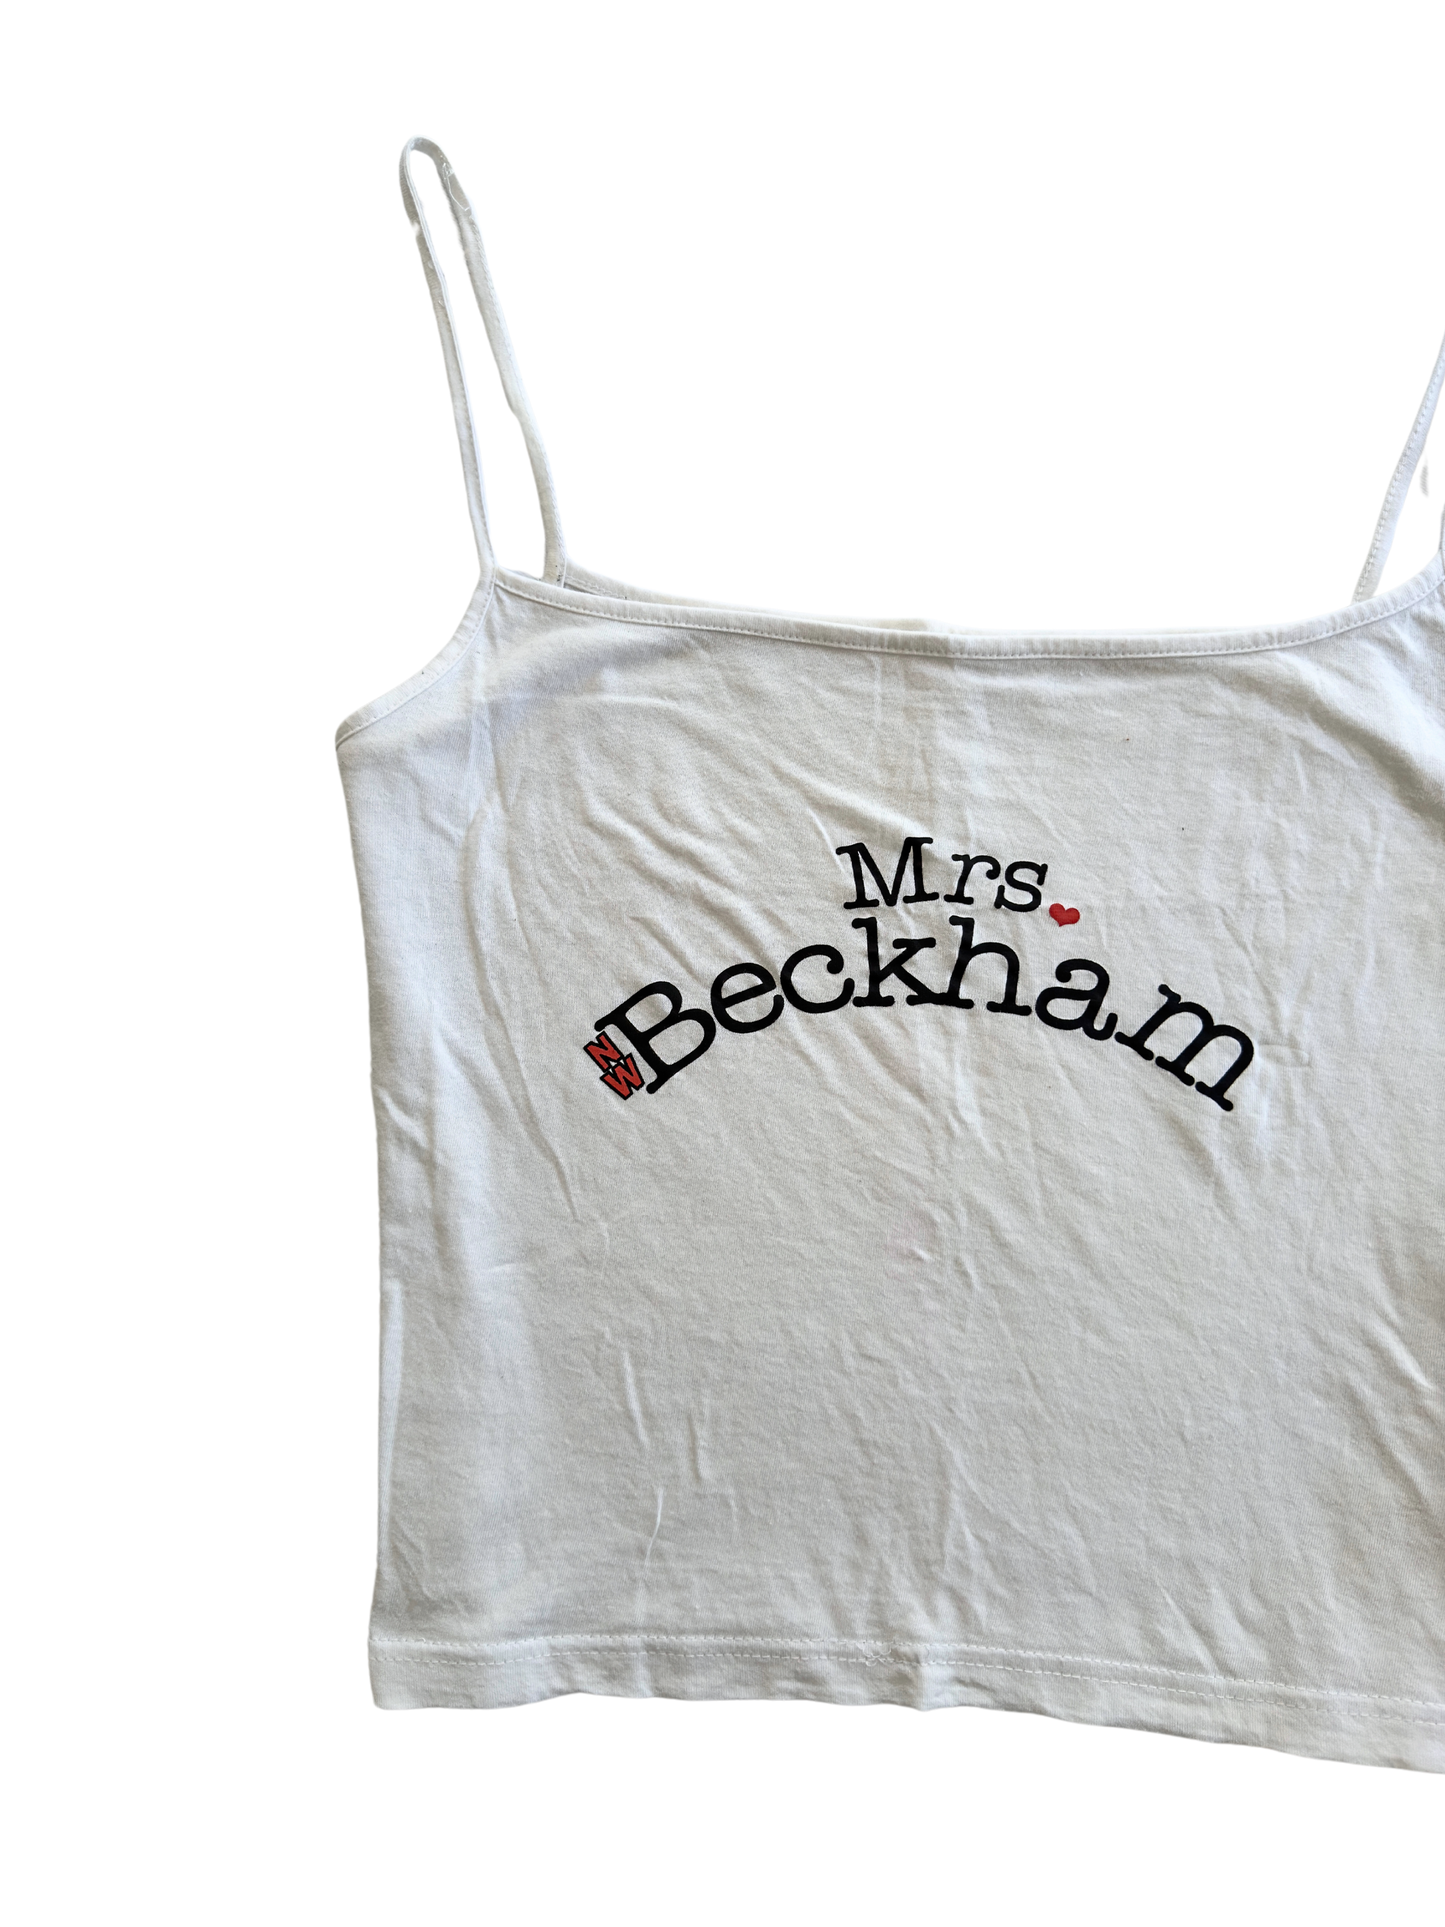 00s "Mrs Beckham" Tank Top | Size 8-12